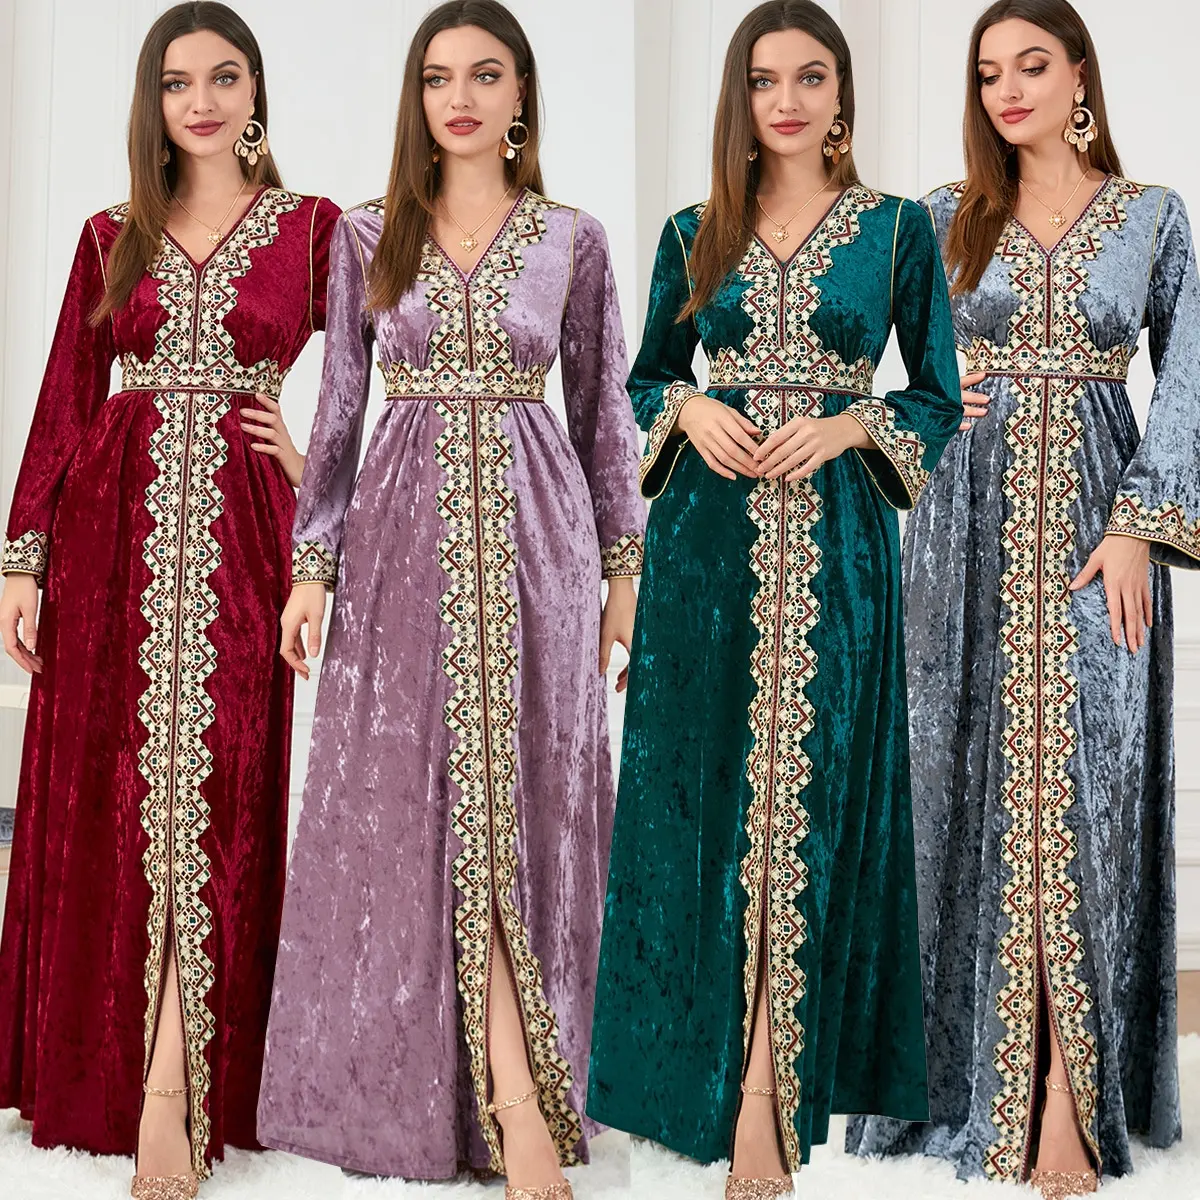 Bahar Abaya Dubai fas Kaftan arapça kadınlar müslüman elbise hırka hicap ramazan Eid çiçek baskı etnik islam giyim